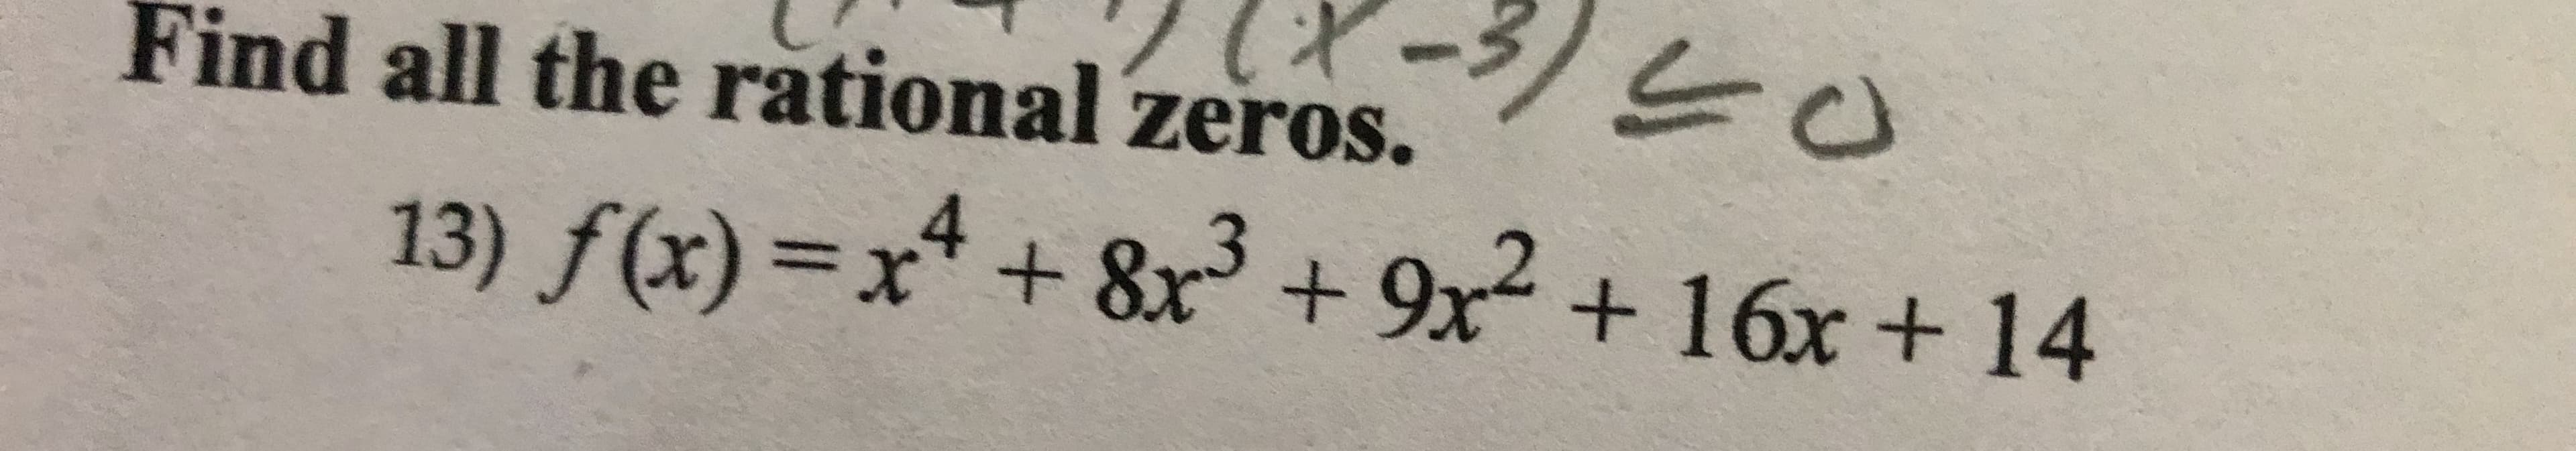 Find all the rătional zeros.
13) f(x)=x* + 8x +
4
9x +16x +14
